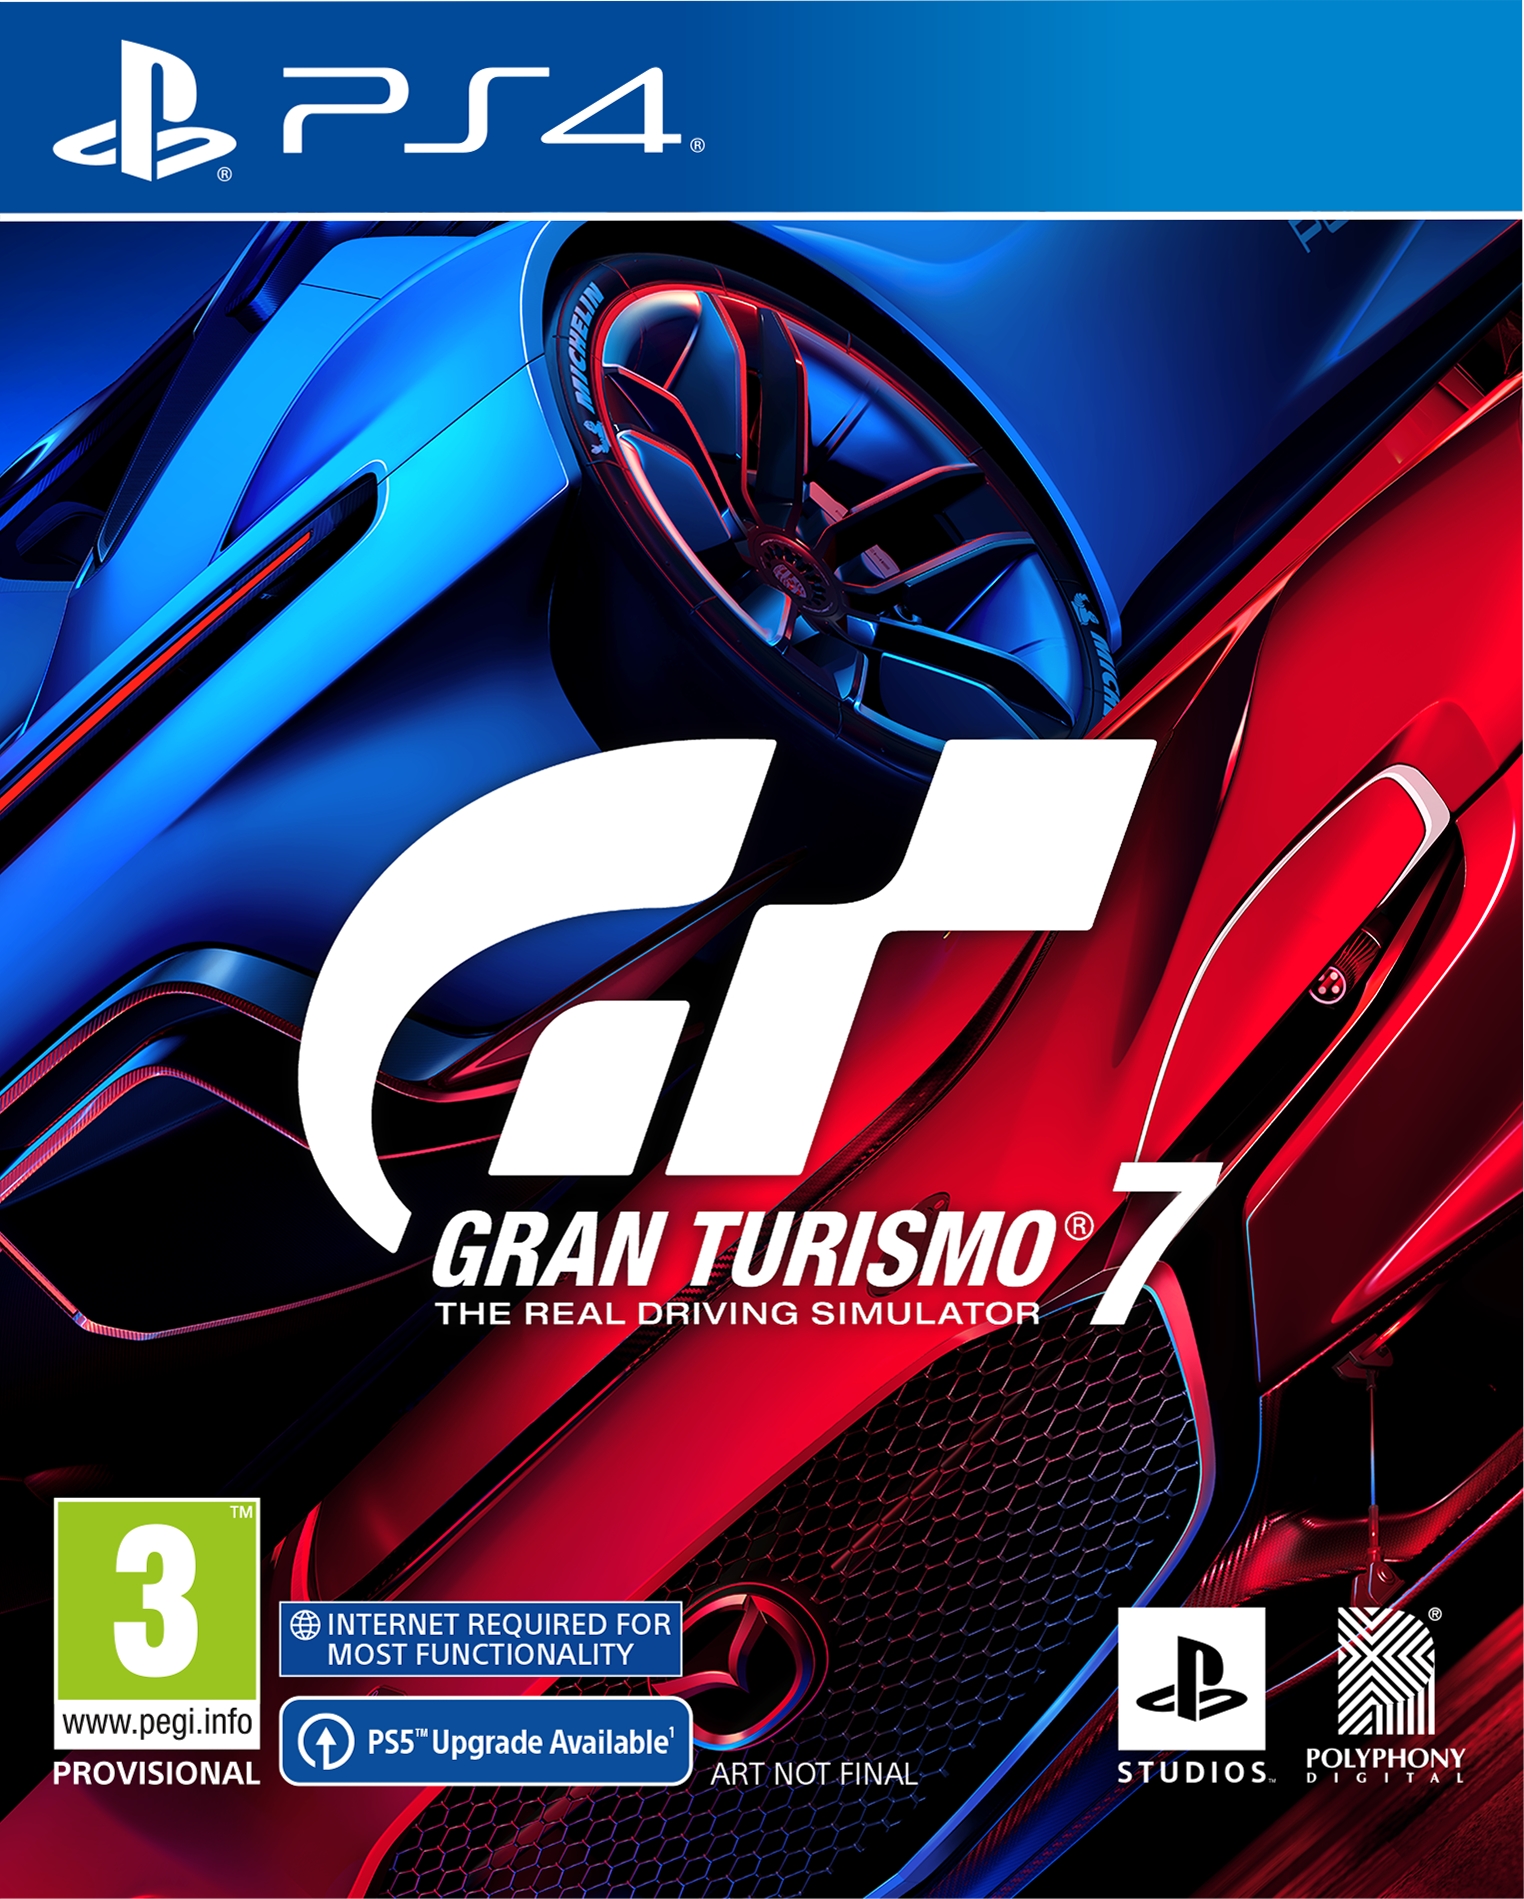 jaquette reduite de Gran Turismo 7 sur Playstation 4